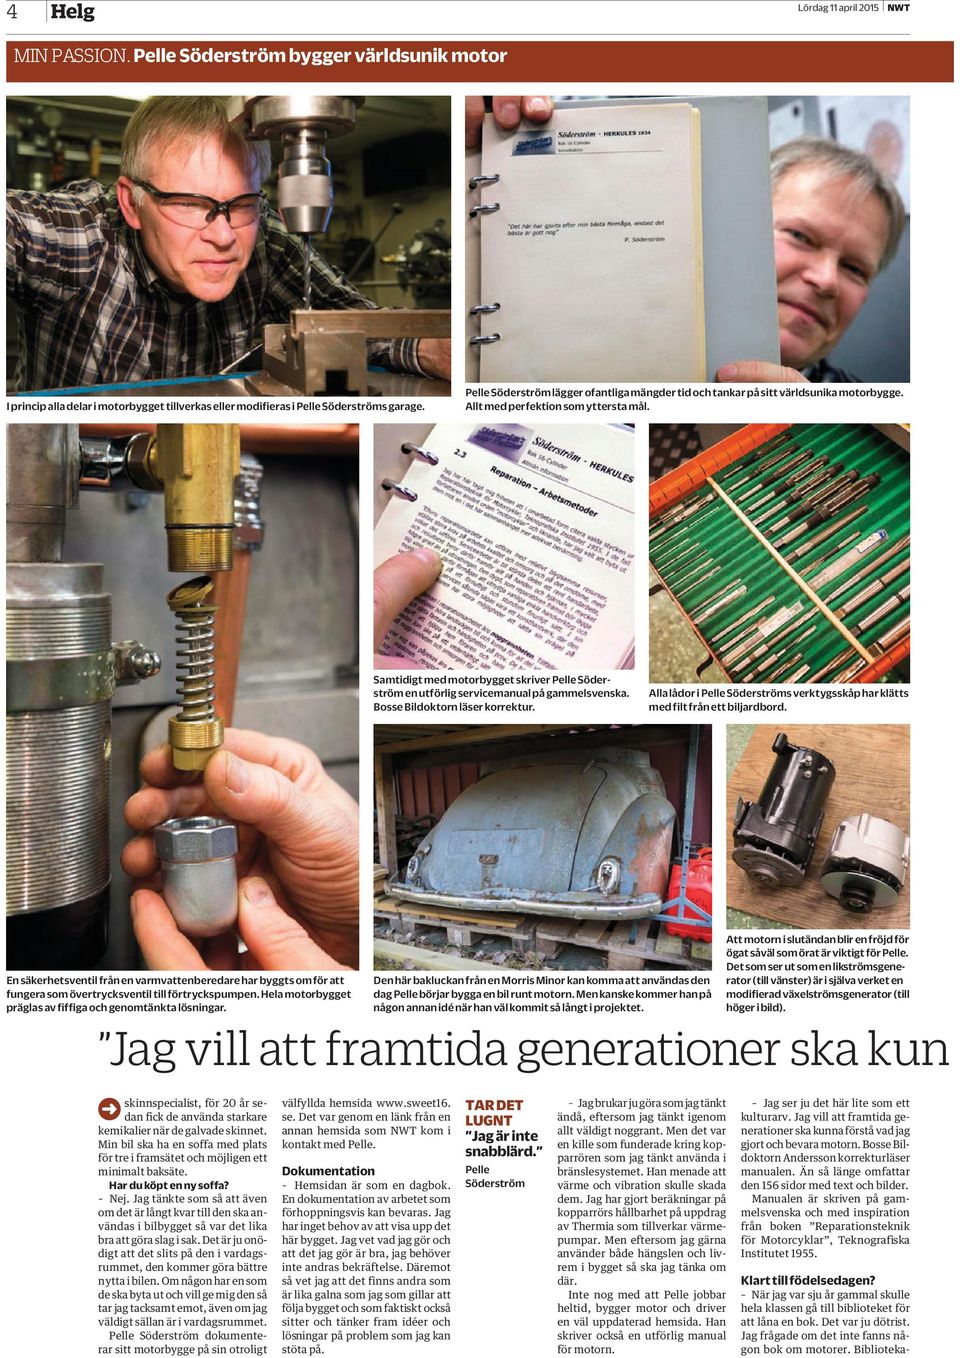 Samtidigt med motorbygget skriver Pelle Söderström en utförlig servicemanual på gammelsvenska. Bosse Bildoktorn läser korrektur.